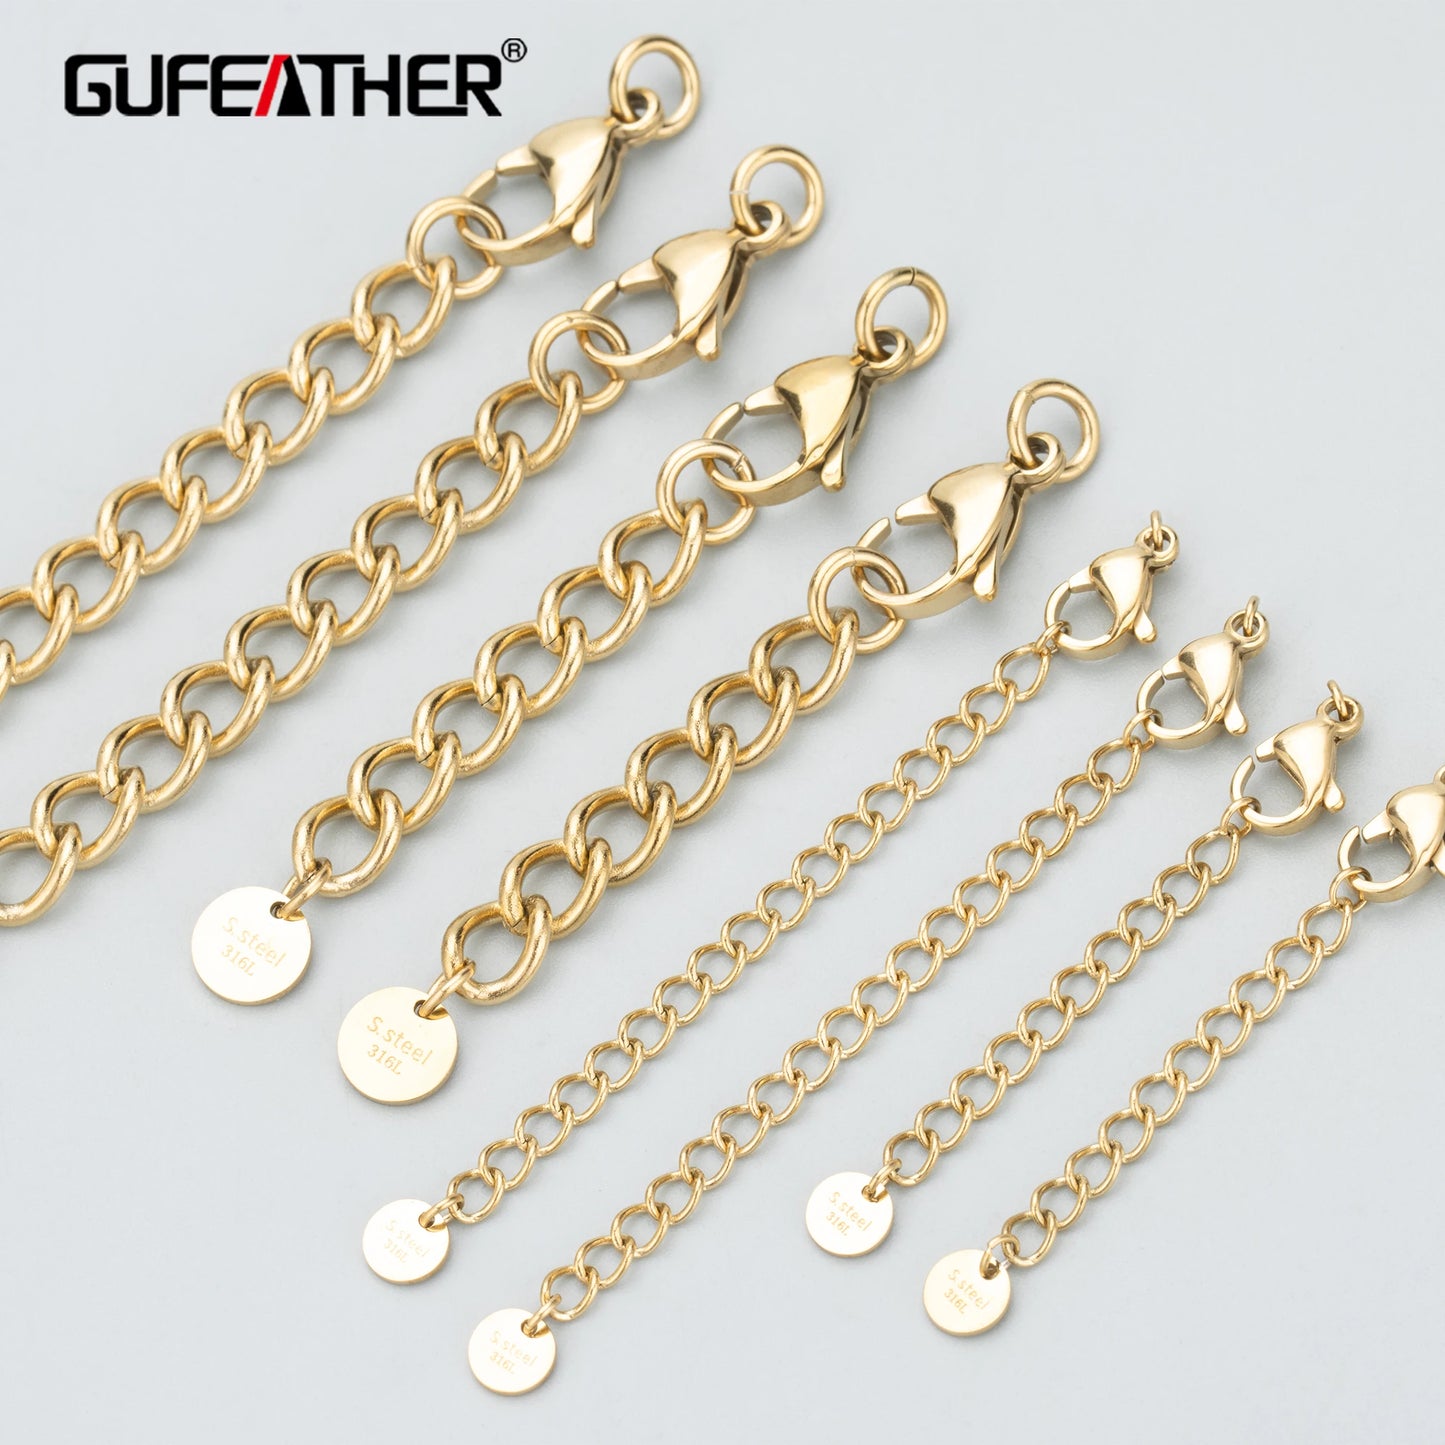 GUFEATHER MC37, accessoires de bijoux, acier inoxydable 316L, sans nickel, fait à la main, résultats de fabrication de bijoux, chaîne étendue, 4 pièces/lot 